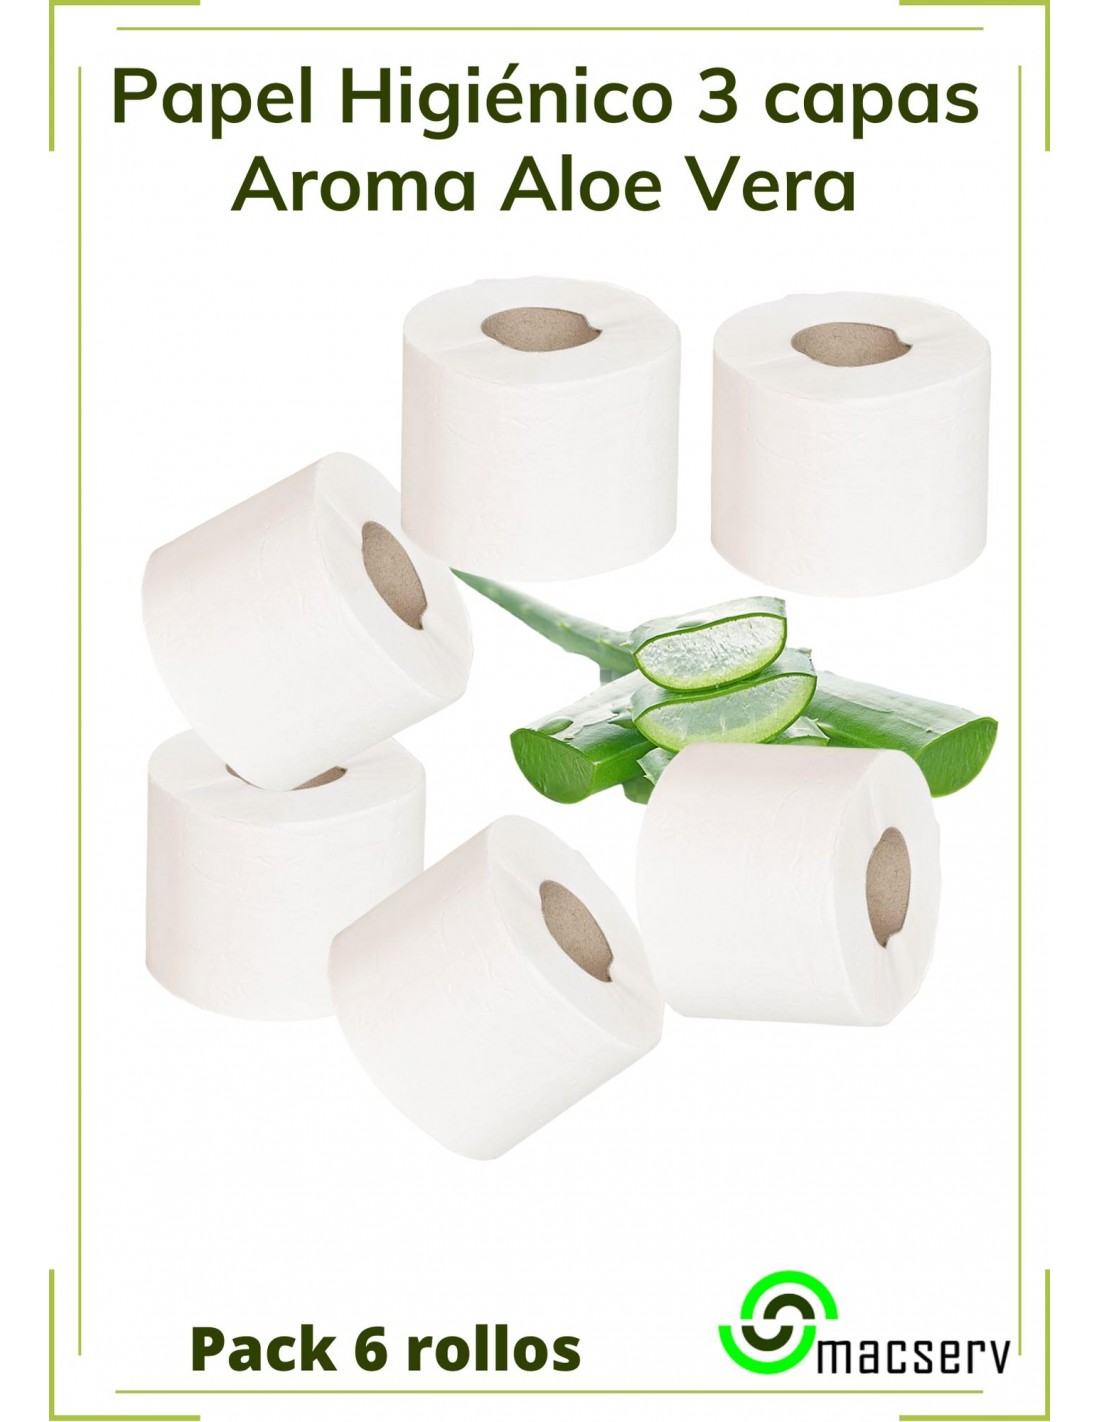 Papel Higiénico aroma Aloe Vera 3 capas